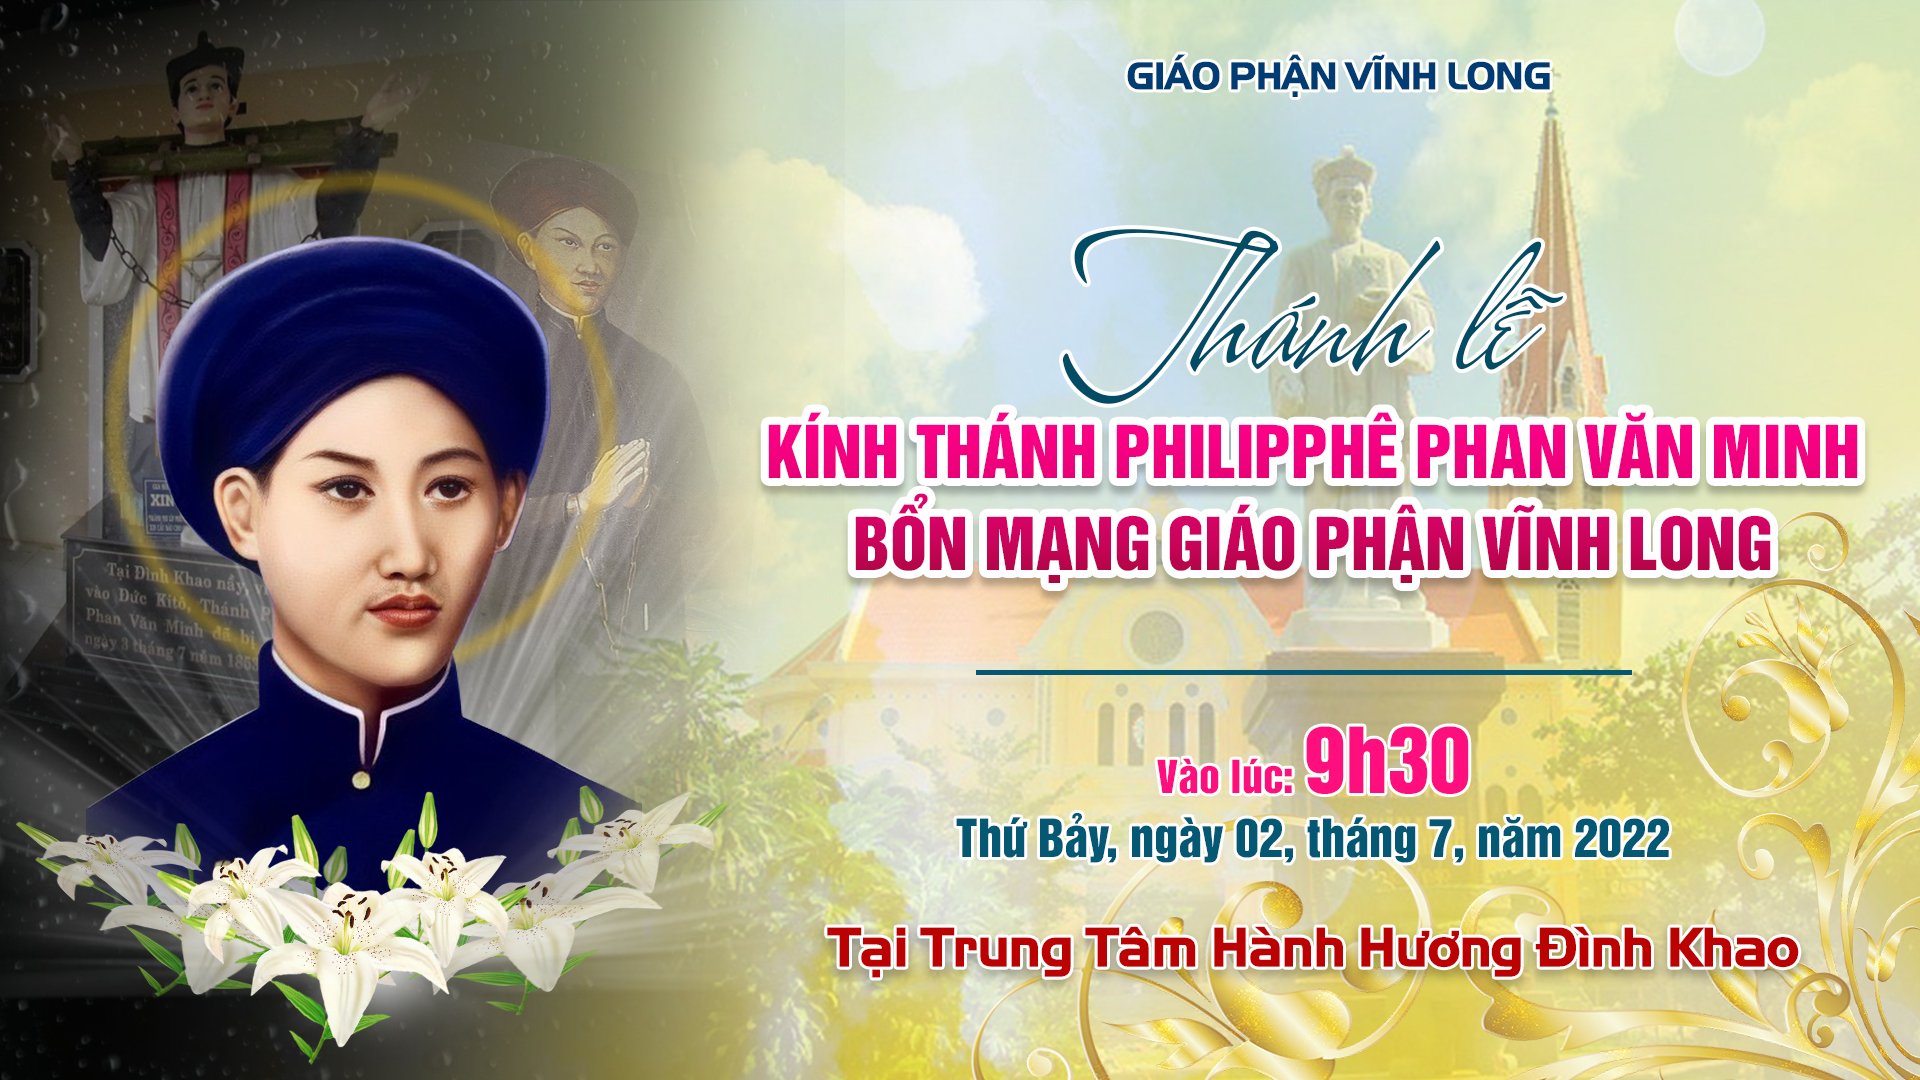 Trực tuyến: Thánh lễ kính thánh Philipphê Phan Văn Minh - Bổn Mạng Giáo Phận Vĩnh Long - Ngày 02.7.2022